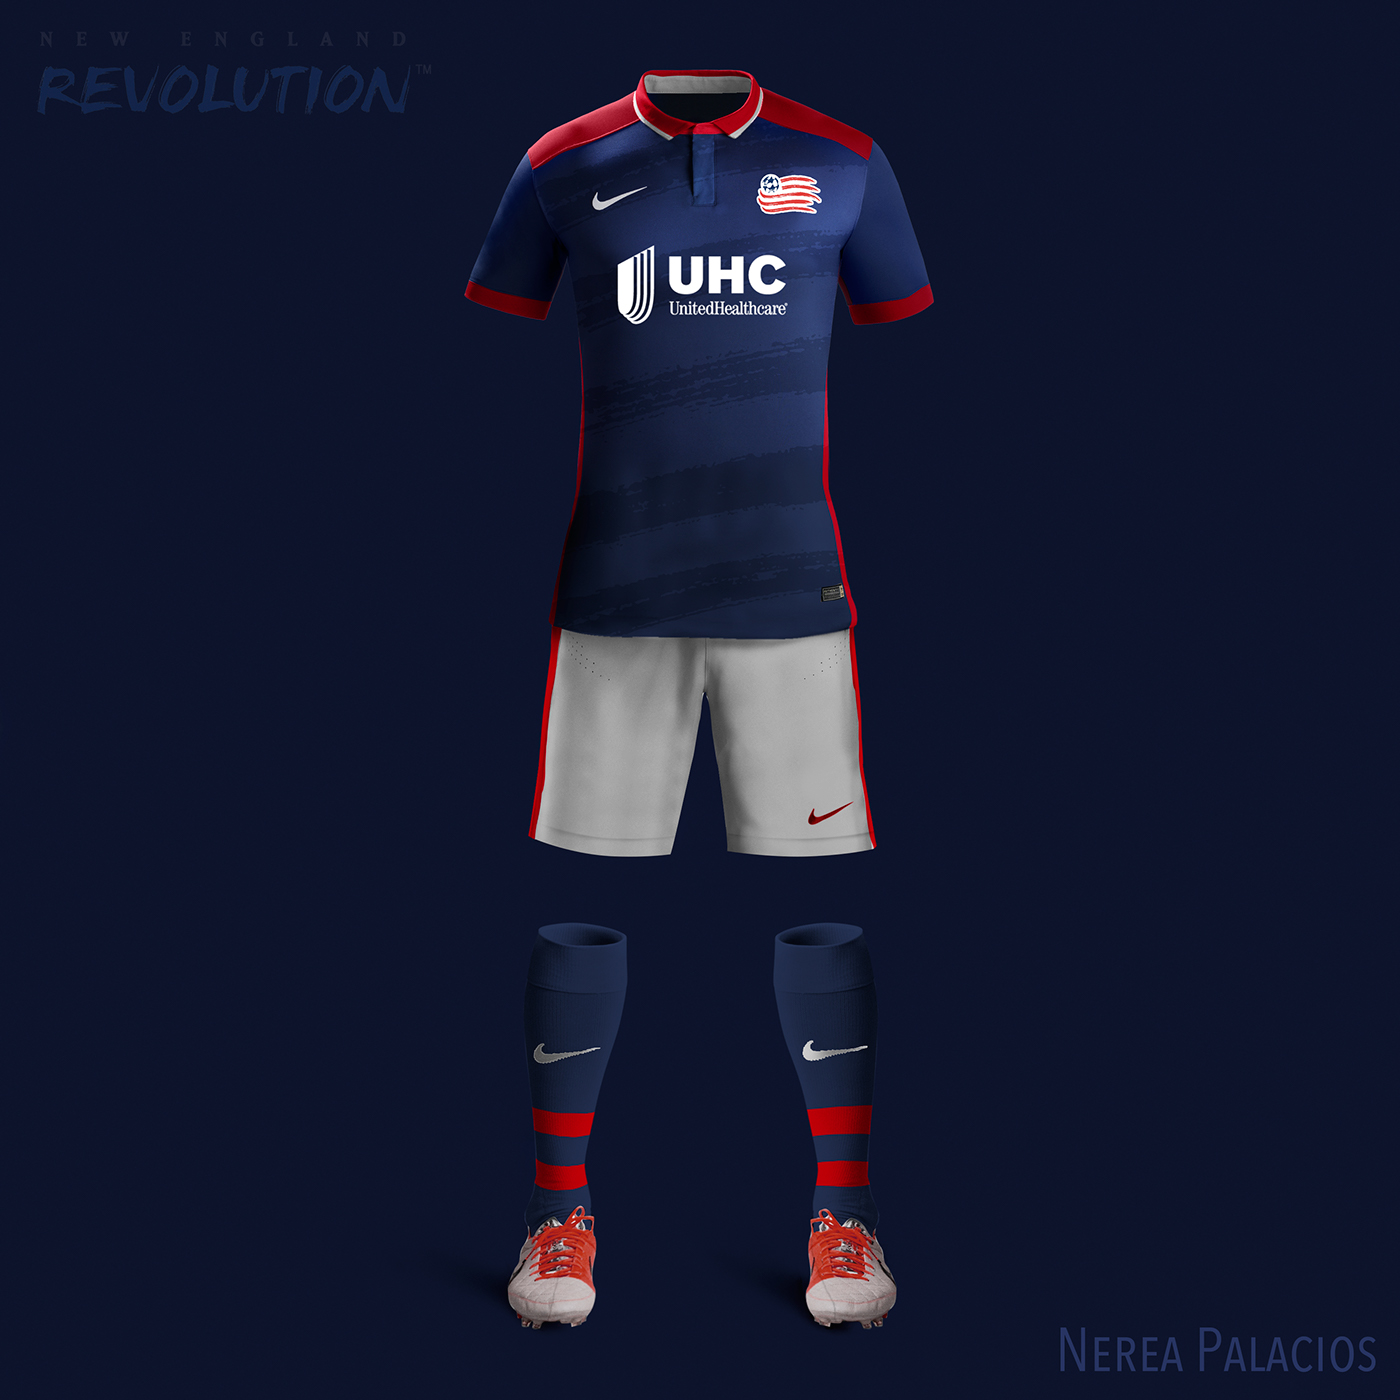 NY city kit ny redbulls kit mls kits Nerea Palacios jersey football jersey Under Armour New Balance equipaciones Futbol soccer mls Nike